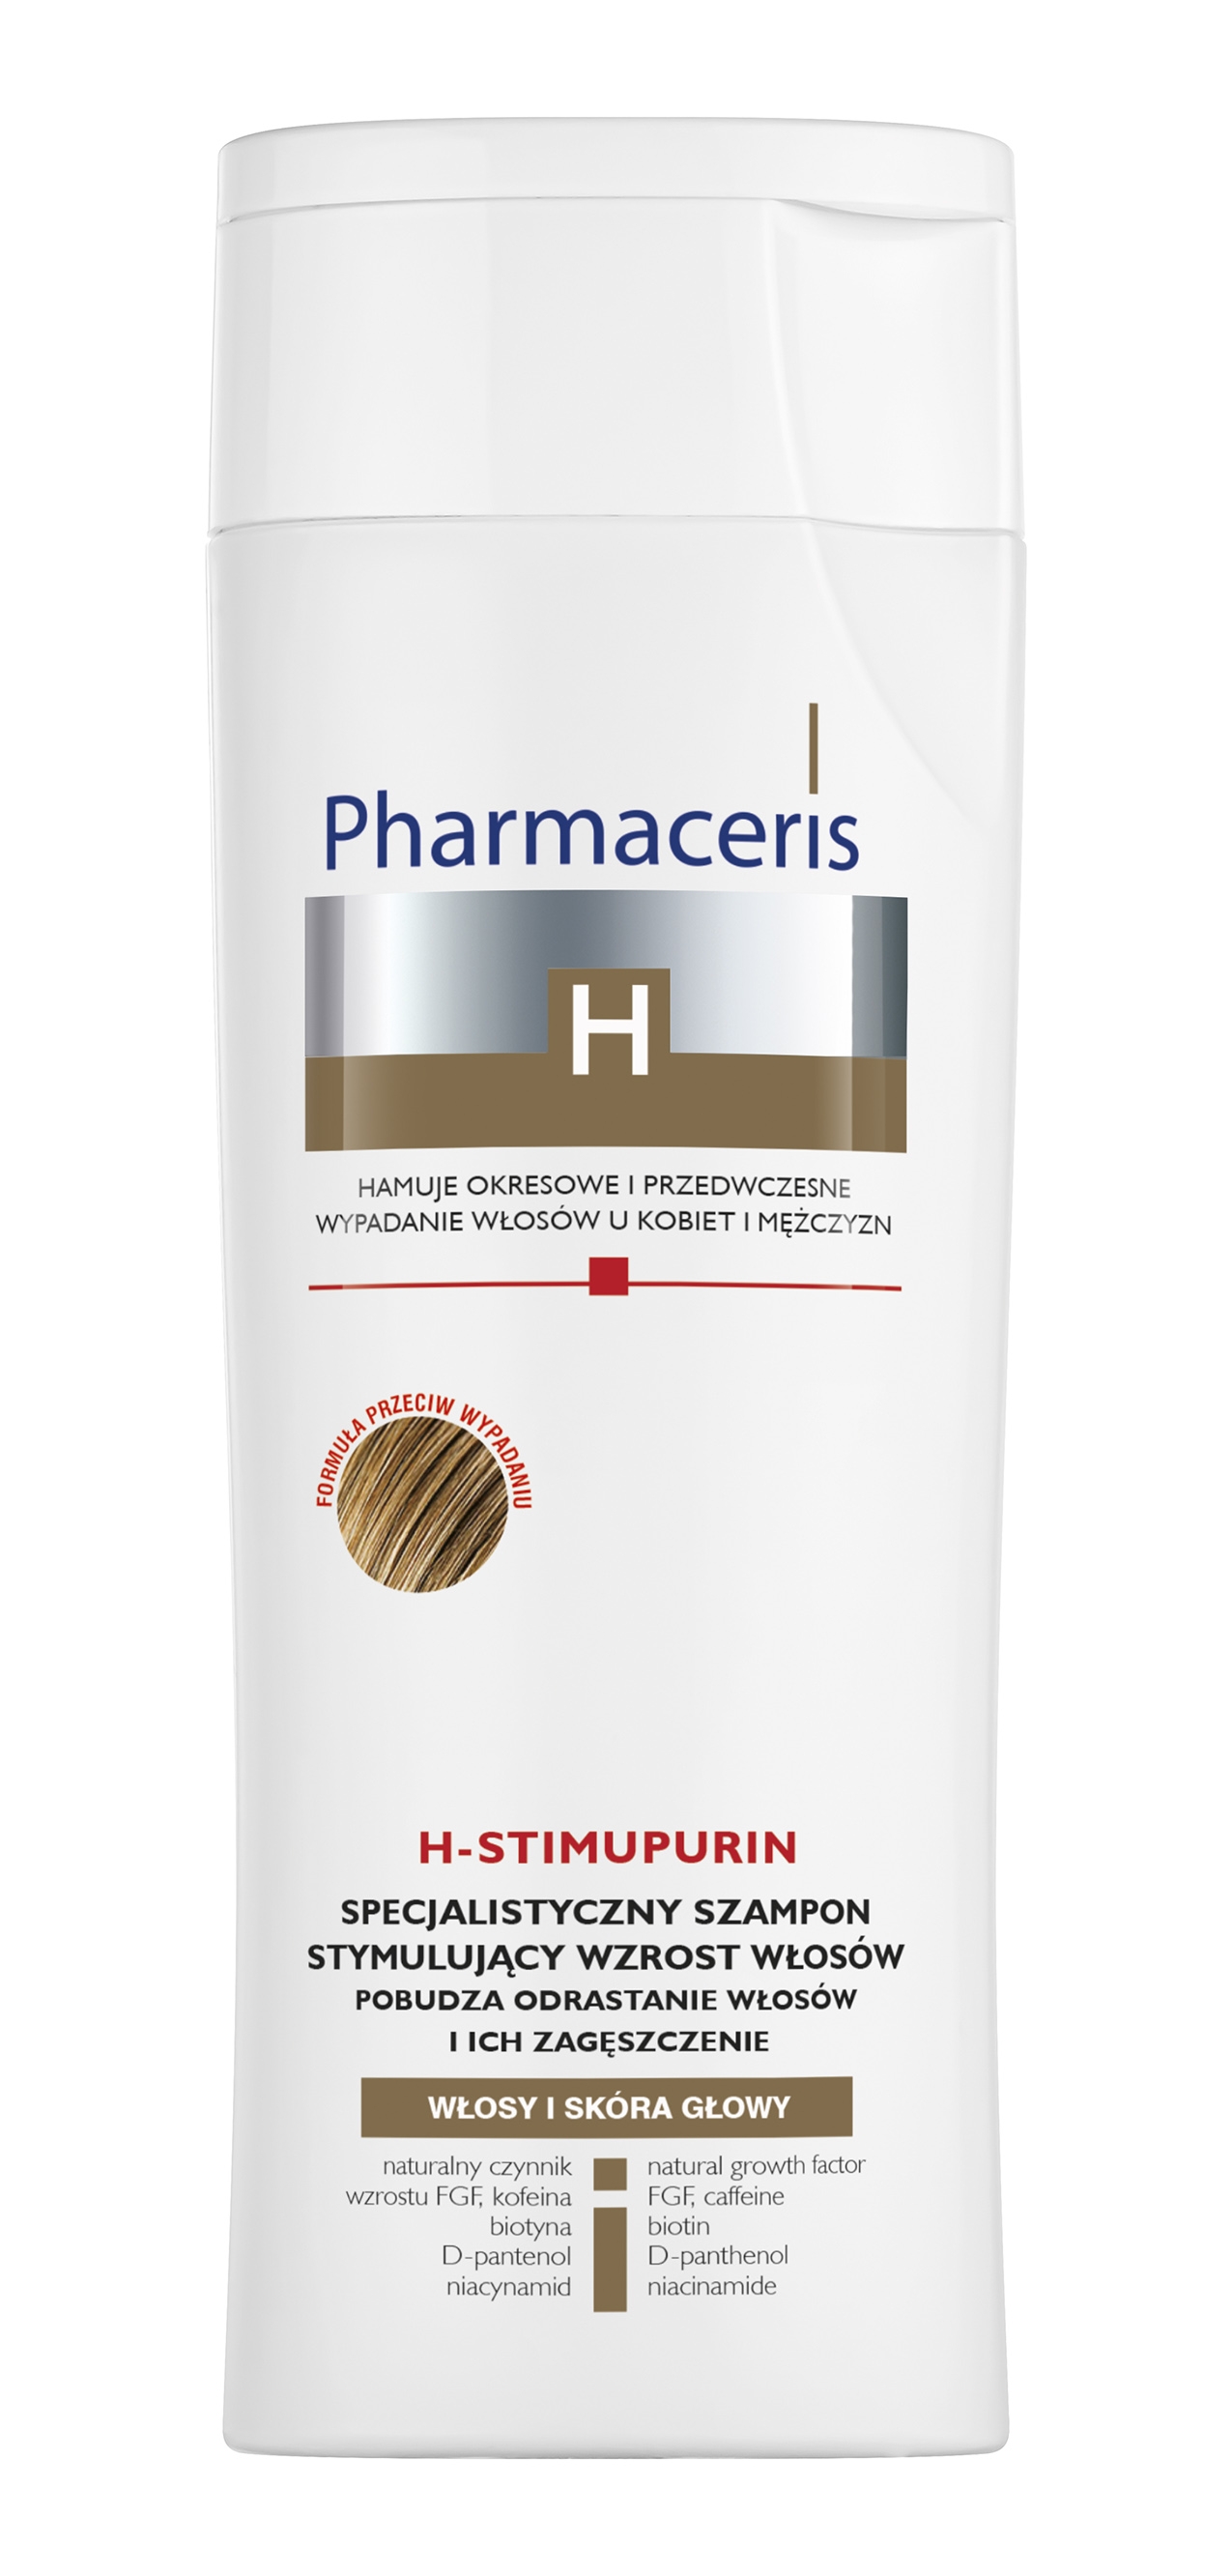 pharmaceris h stimupurin specjalistyczny szampon opinie wizaż